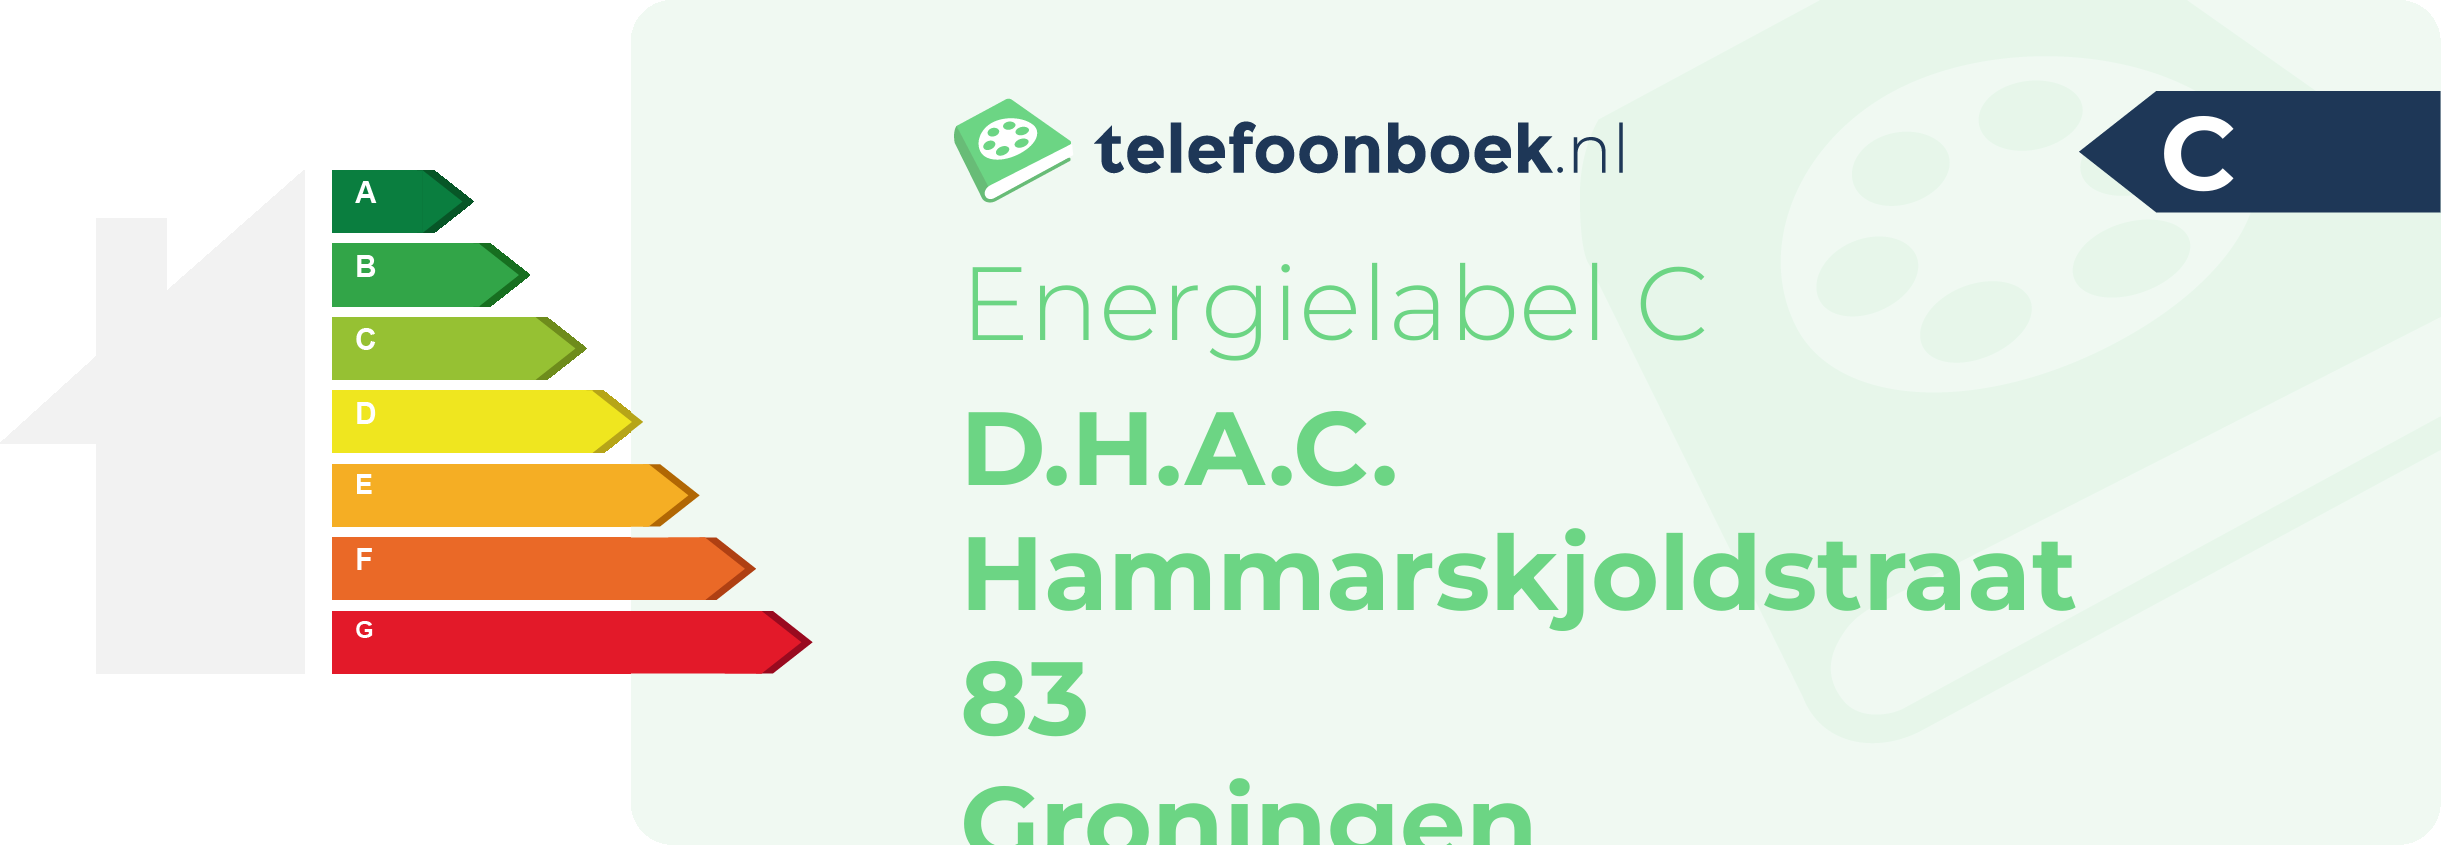 Energielabel D.H.A.C. Hammarskjoldstraat 83 Groningen